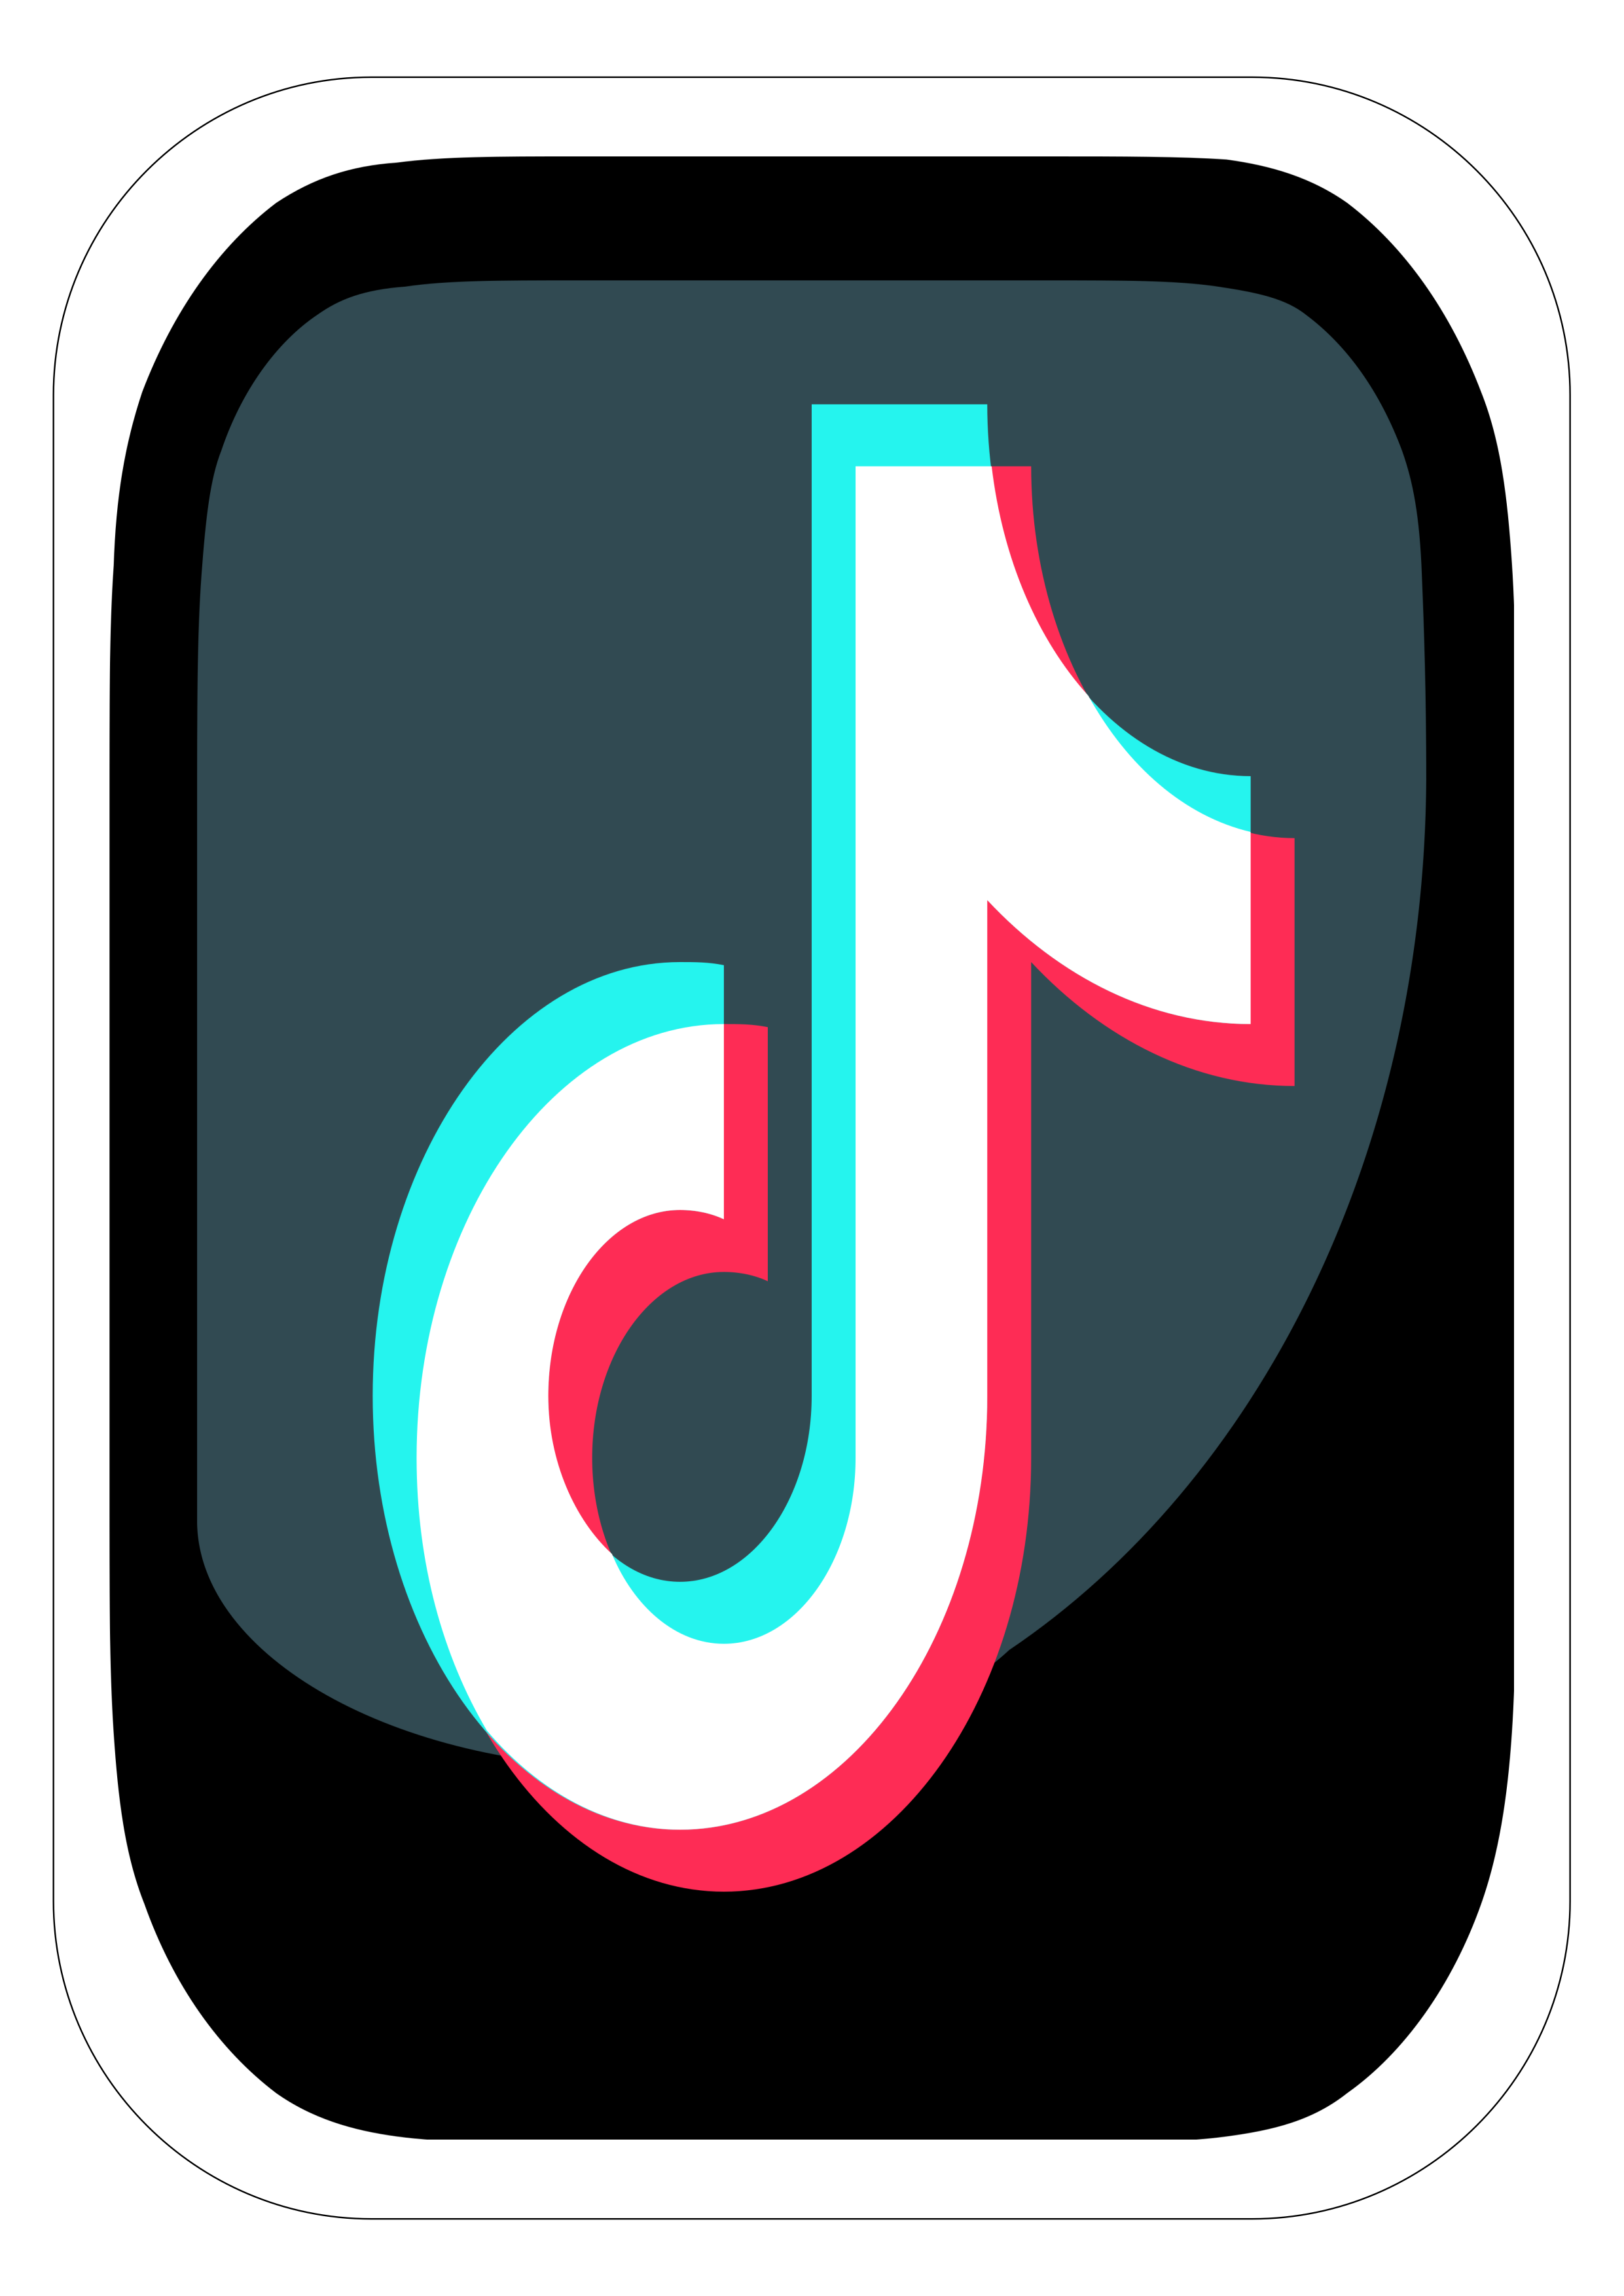 Tiktok simbolo logo aplicativo recorte contorno painel designer gráfico png